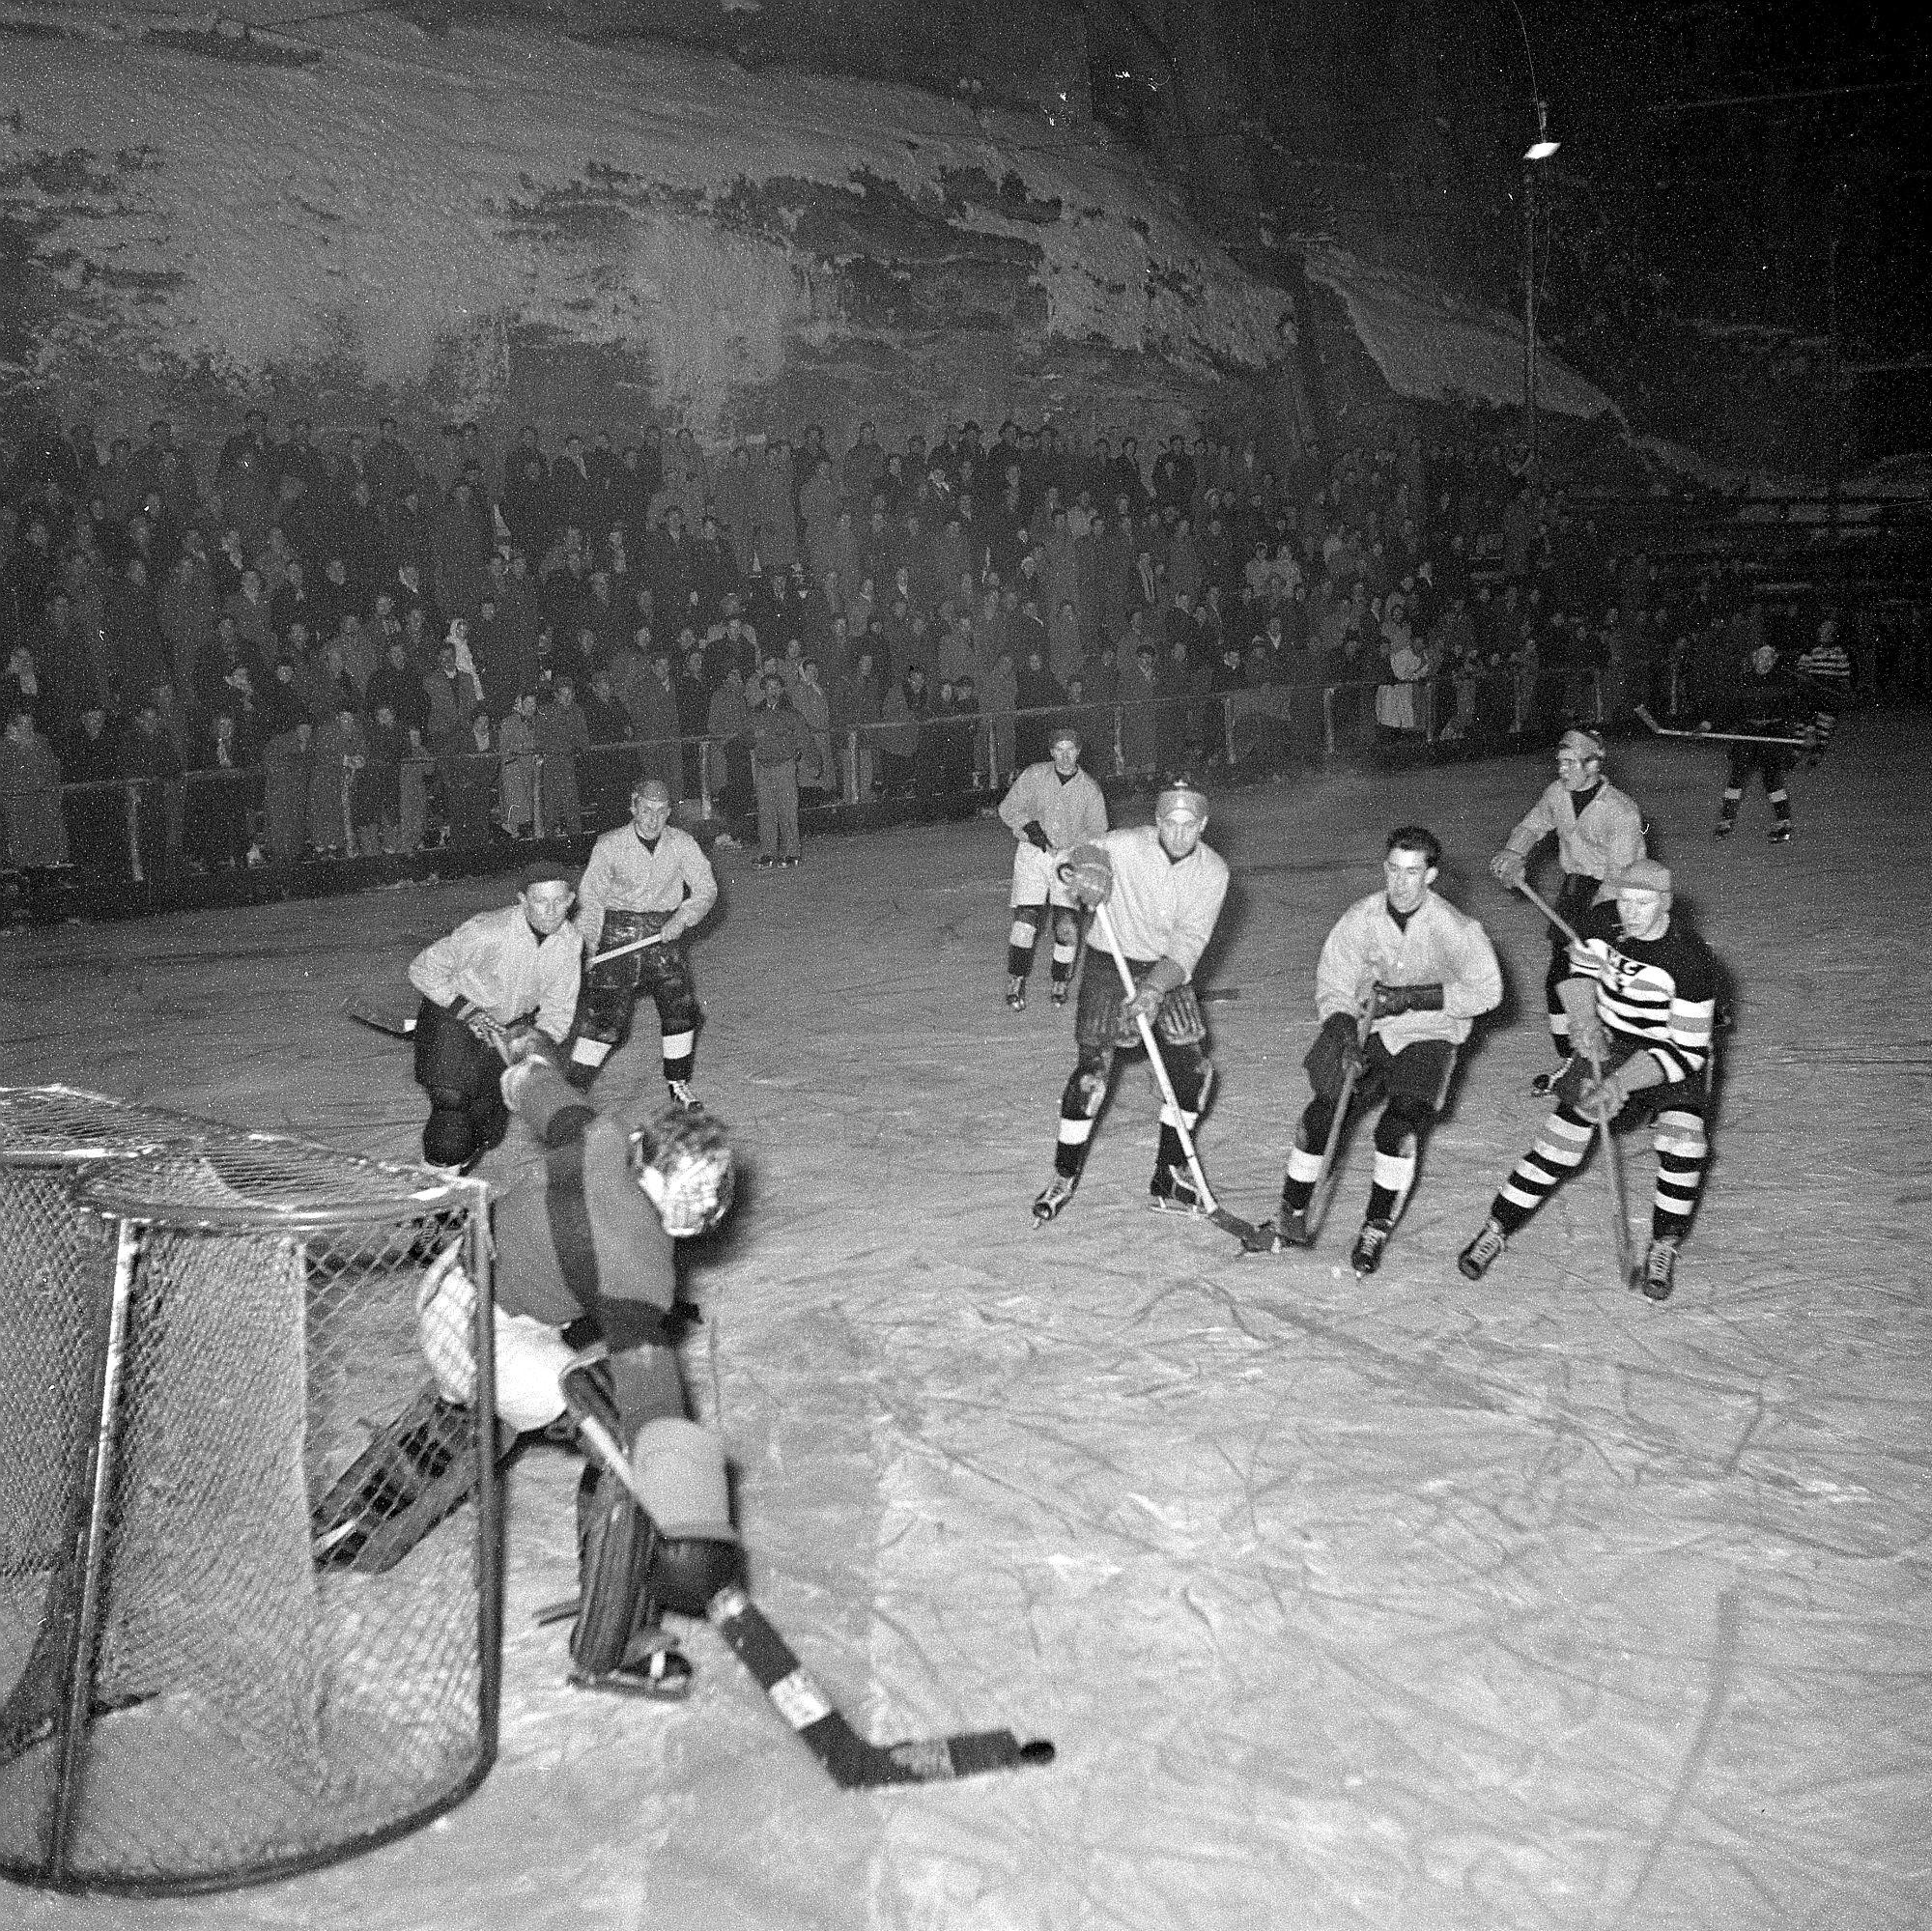 Equipe du HC Gottéron, patinoire des Augustins, Fribourg, 1952 [BCU Fribourg / Fonds Jacques Thévoz]